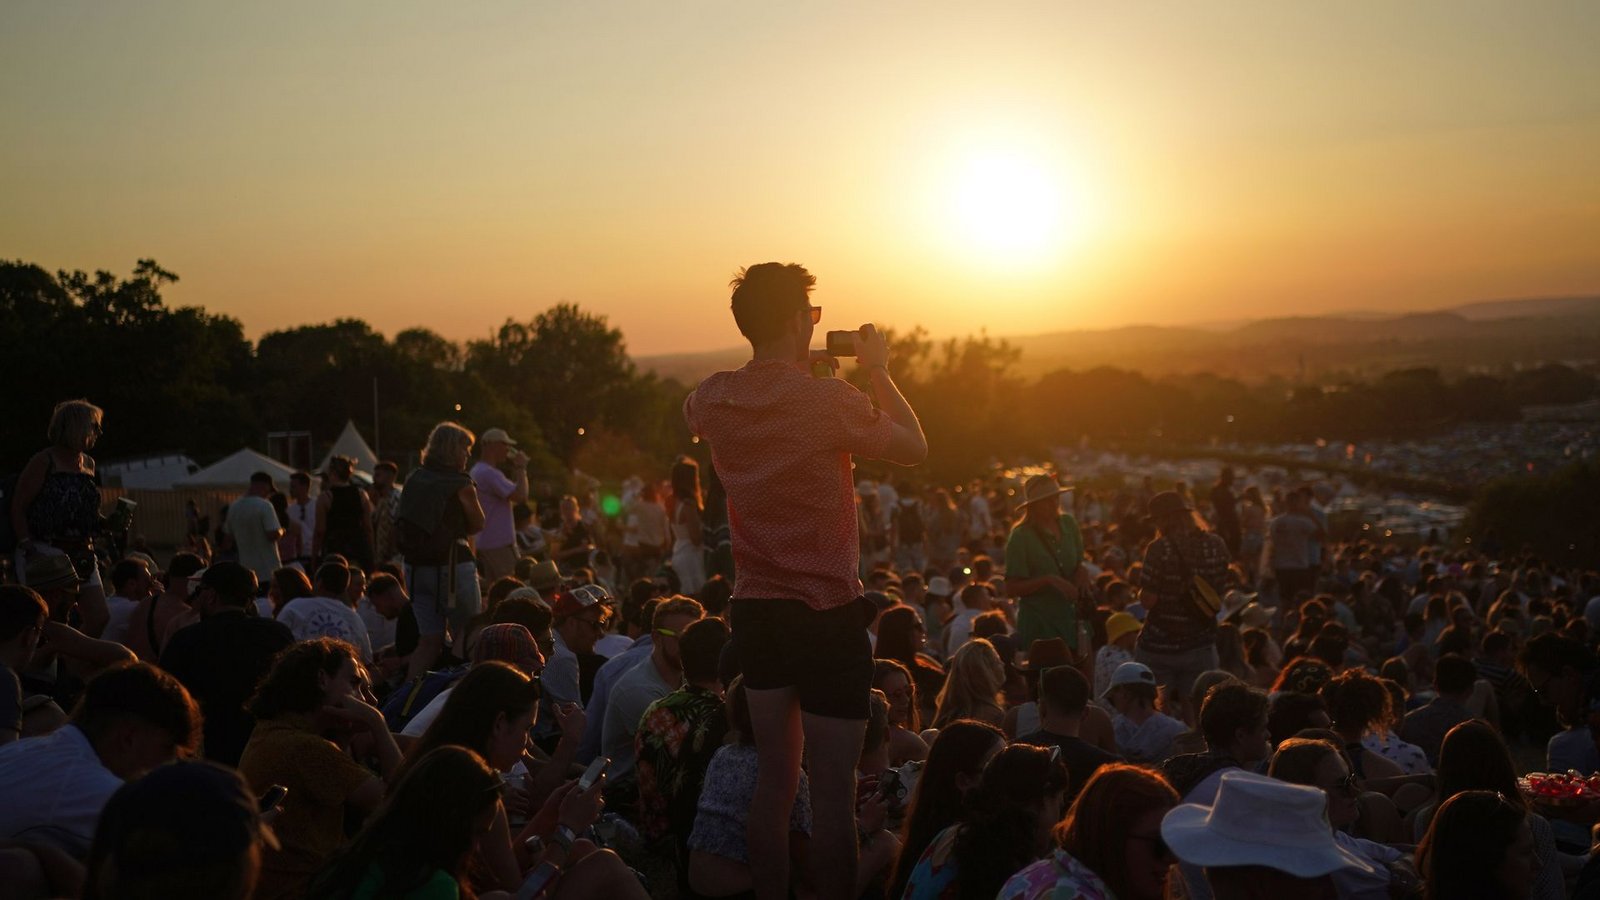 Besucher des Glastonbury Festivals in Großbritannien beobachten den Sonnenuntergang.Foto: Yui Mok/PA Wire/dpa